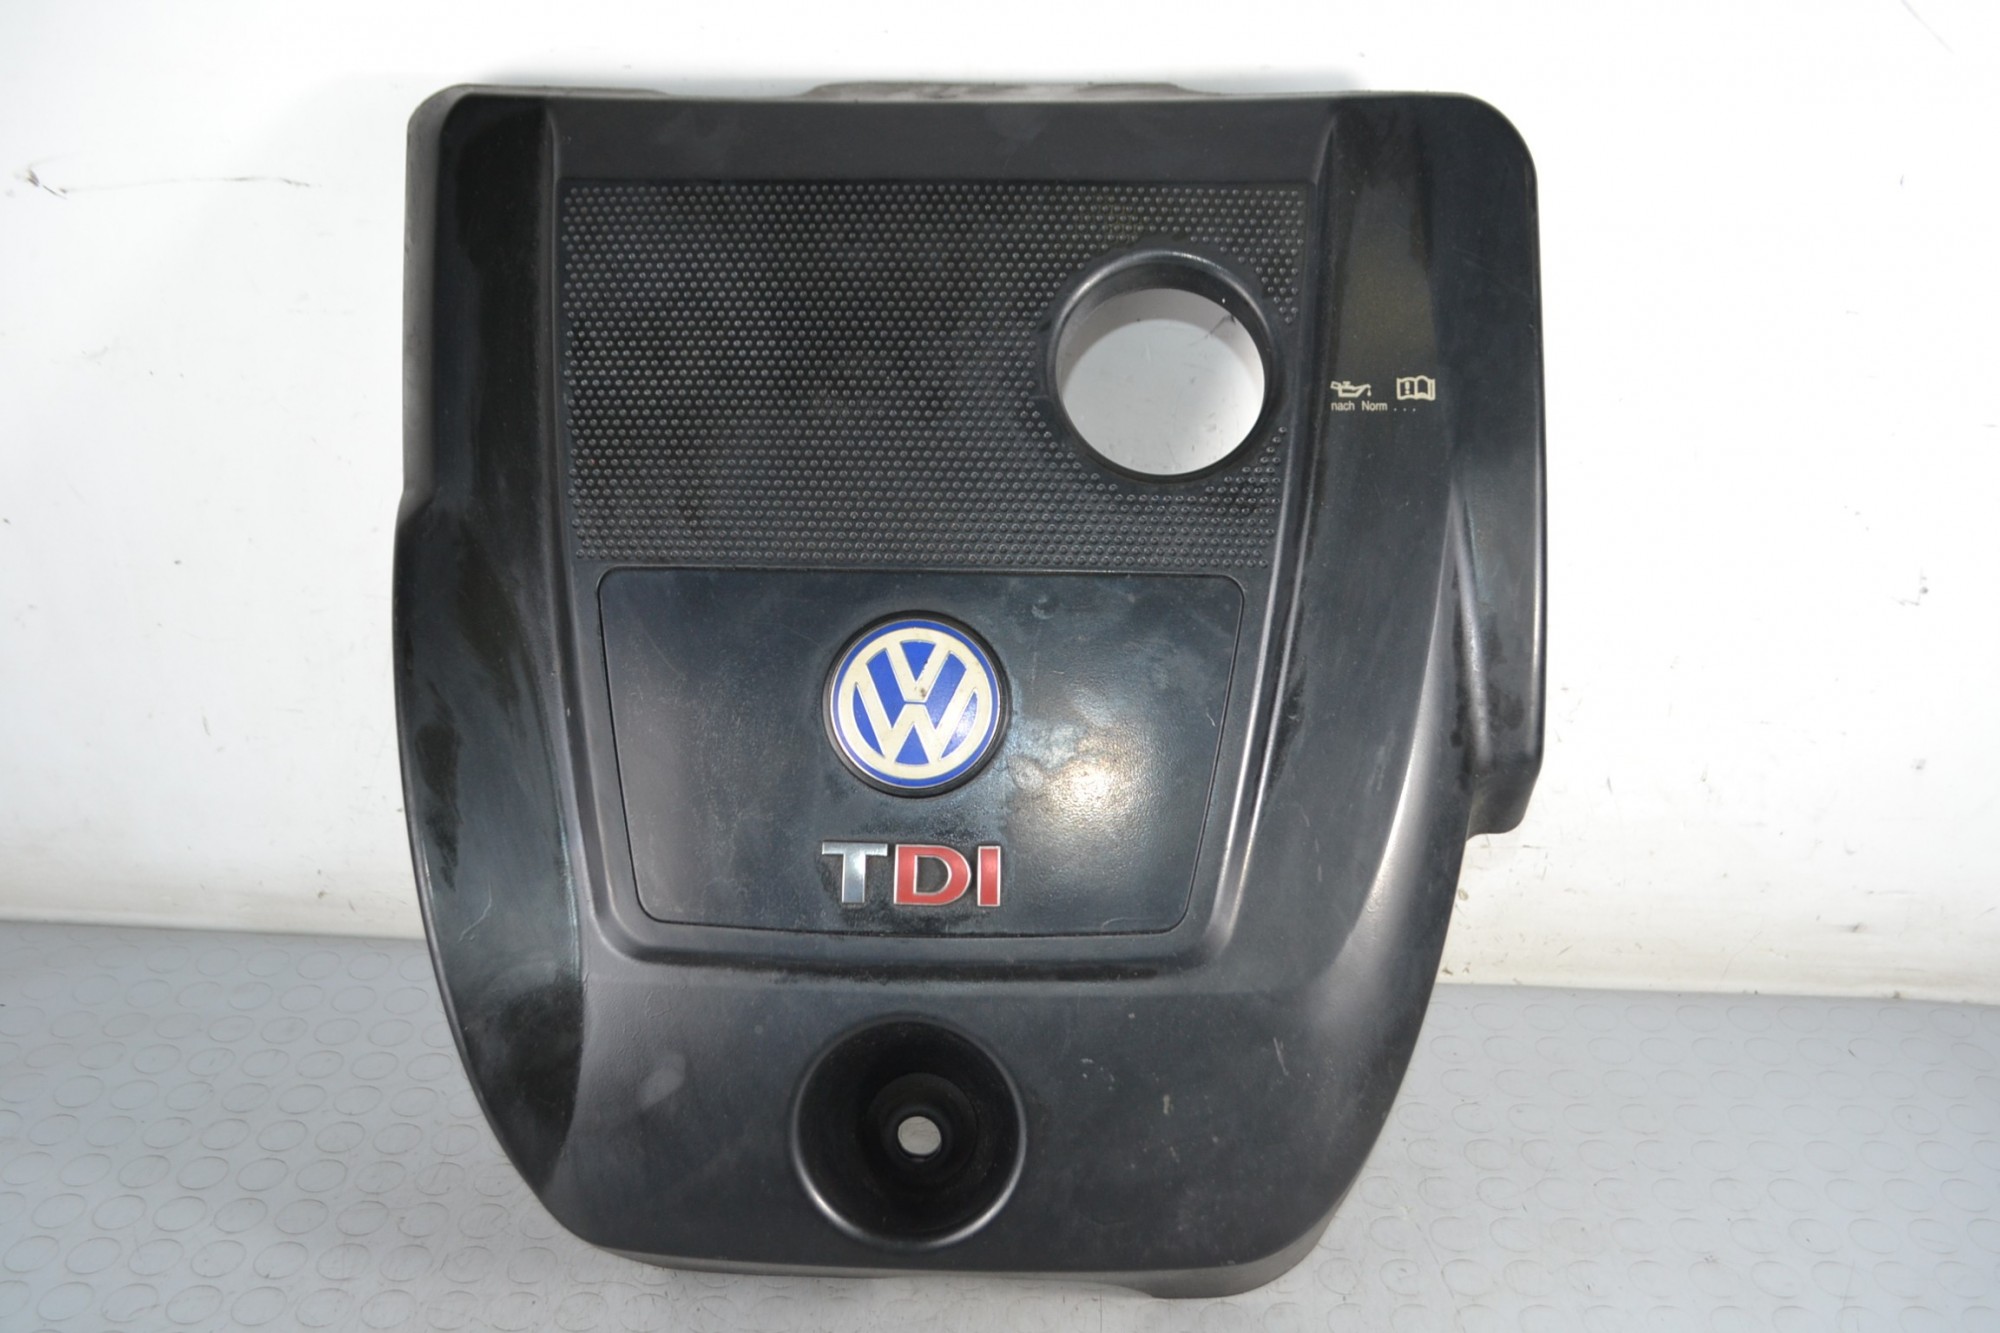 Coperchio Motore Volkswagen Golf IV dal 1997 al 2004 Cod 038103925aj  1669893498845